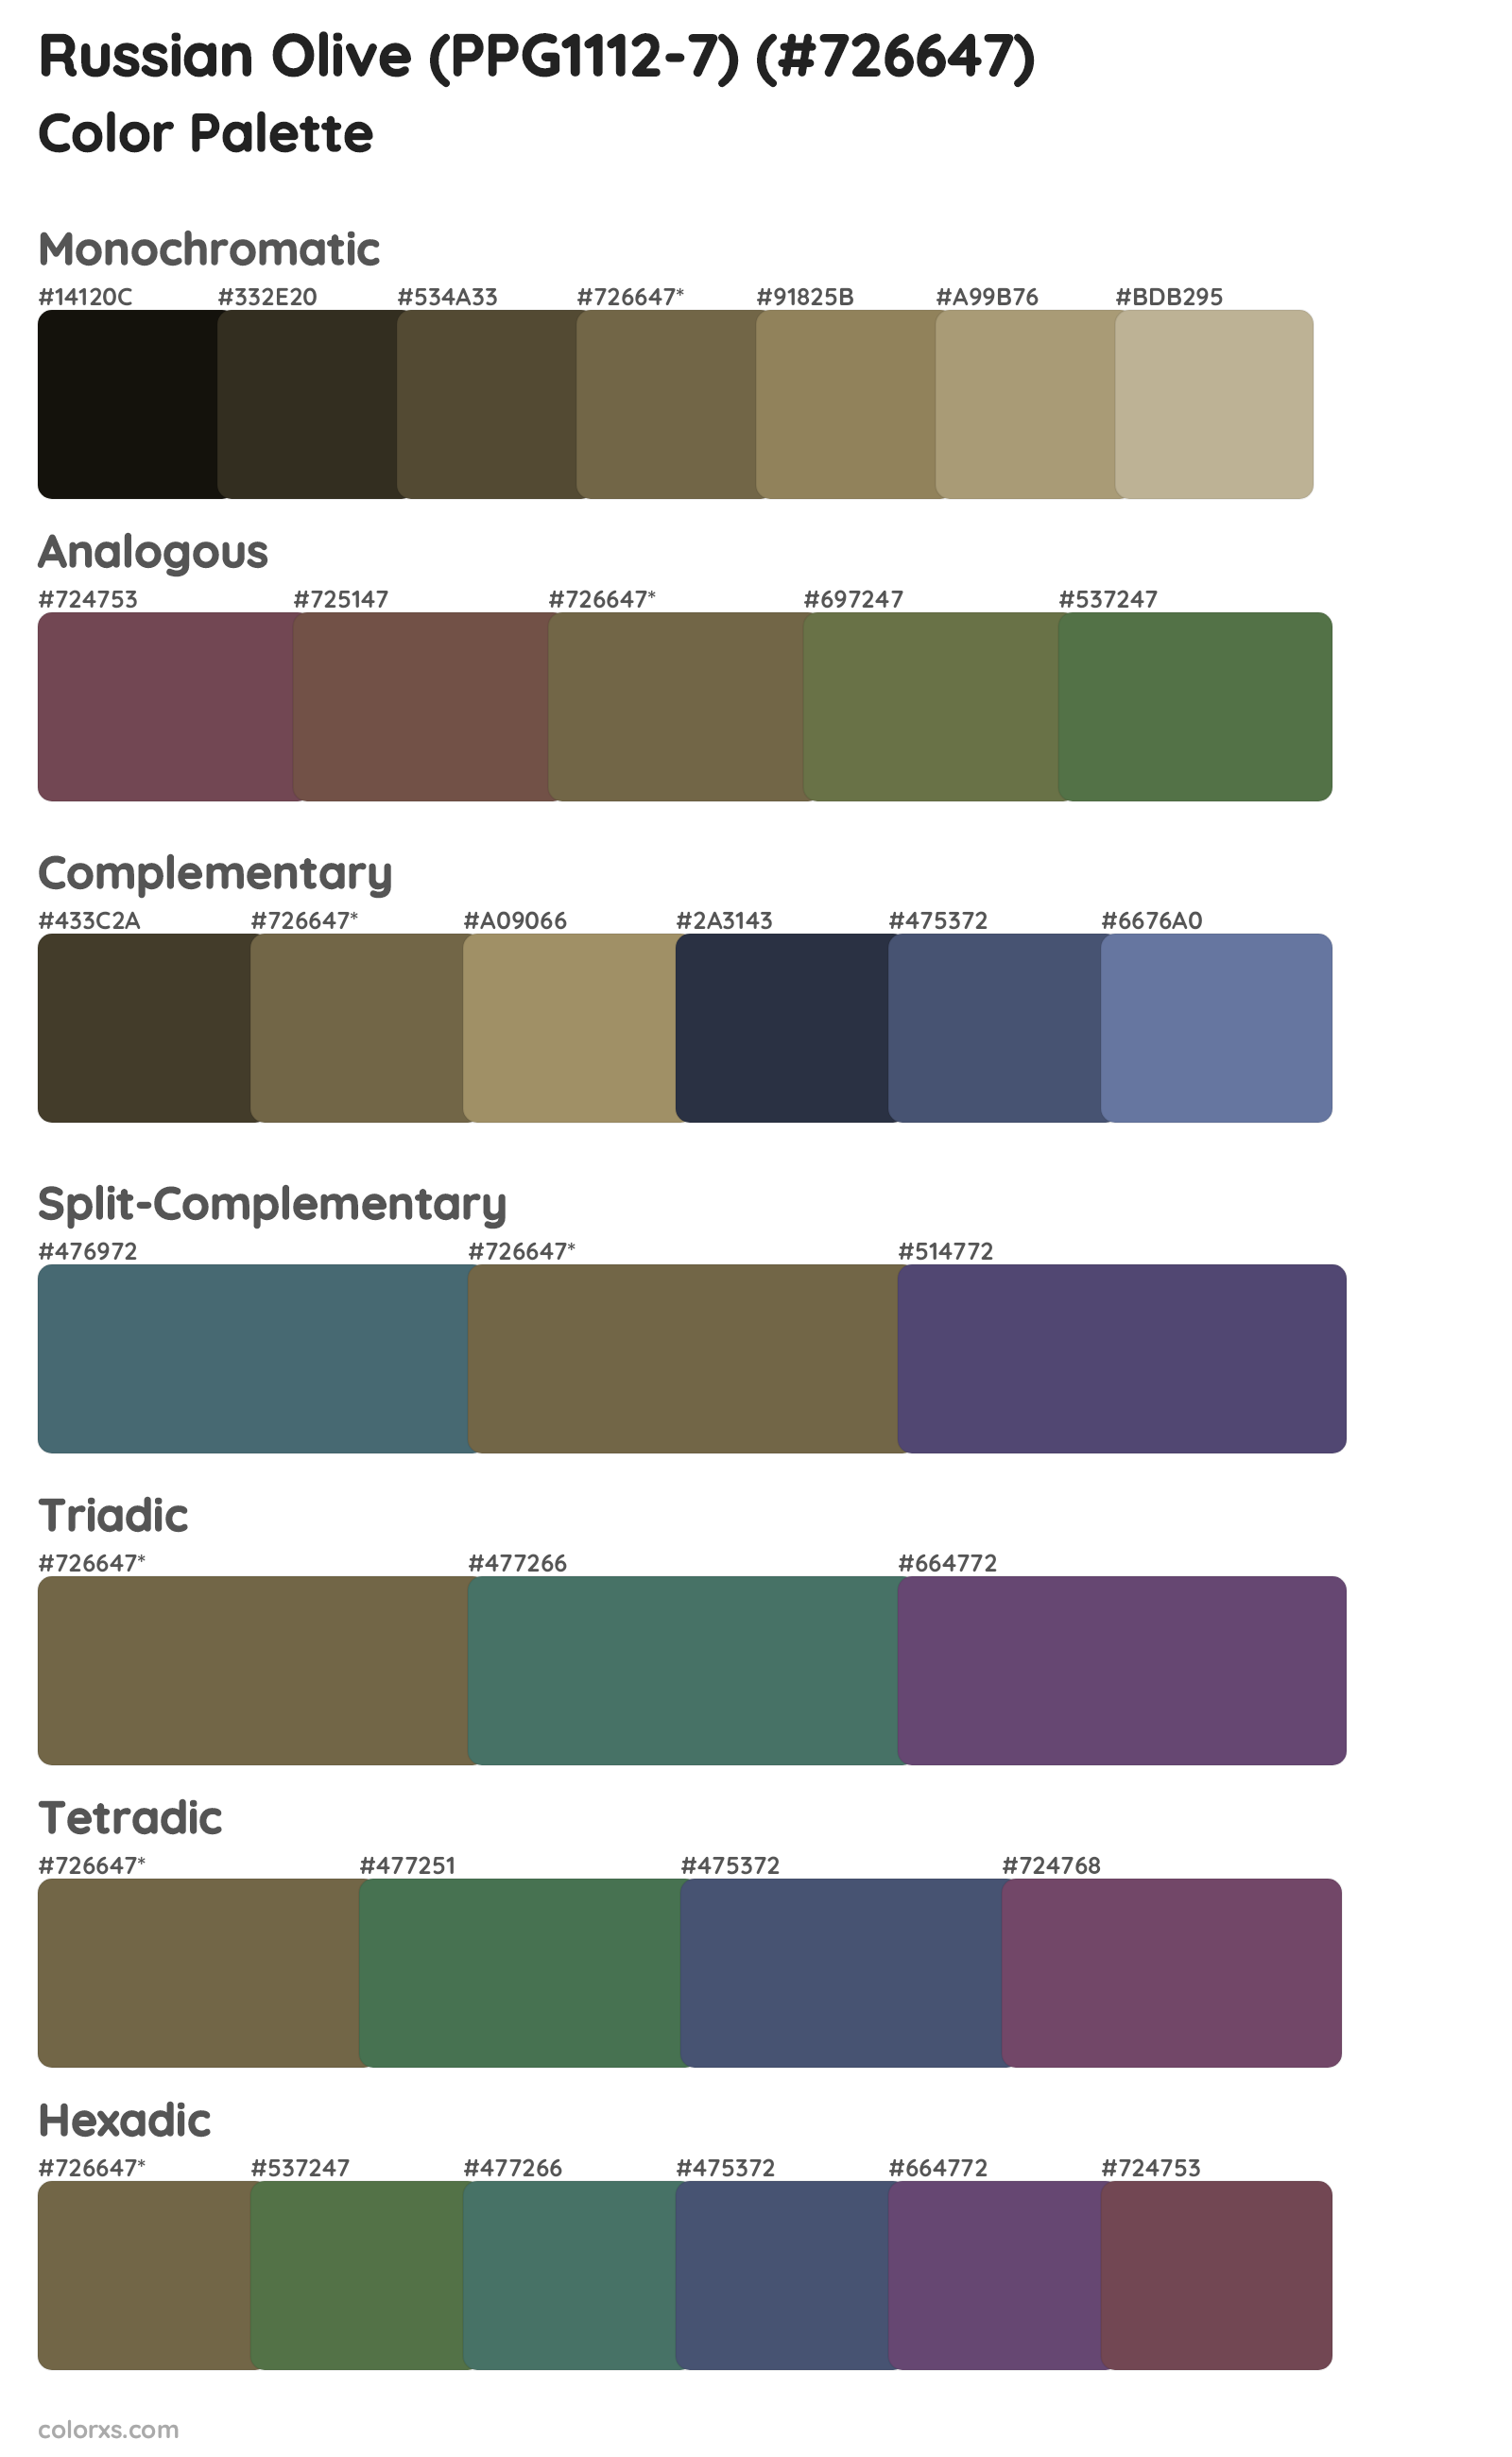 Russian Olive (PPG1112-7) Color Scheme Palettes